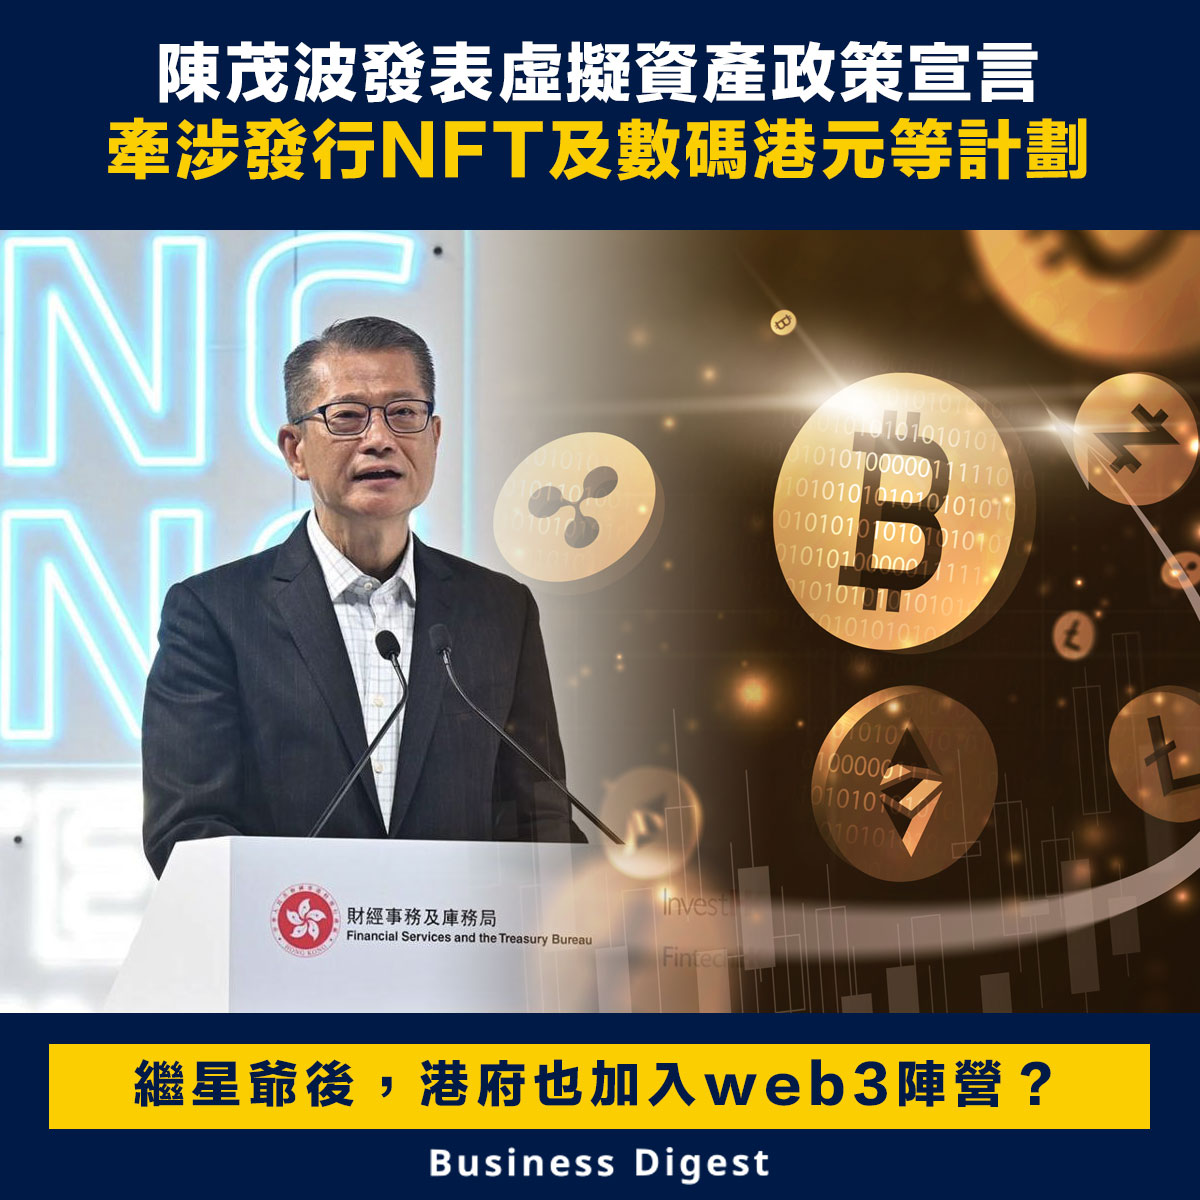 【Web3】陳茂波發表虛擬資產政策宣言，牽涉發行NFT及數碼港元等試驗計劃